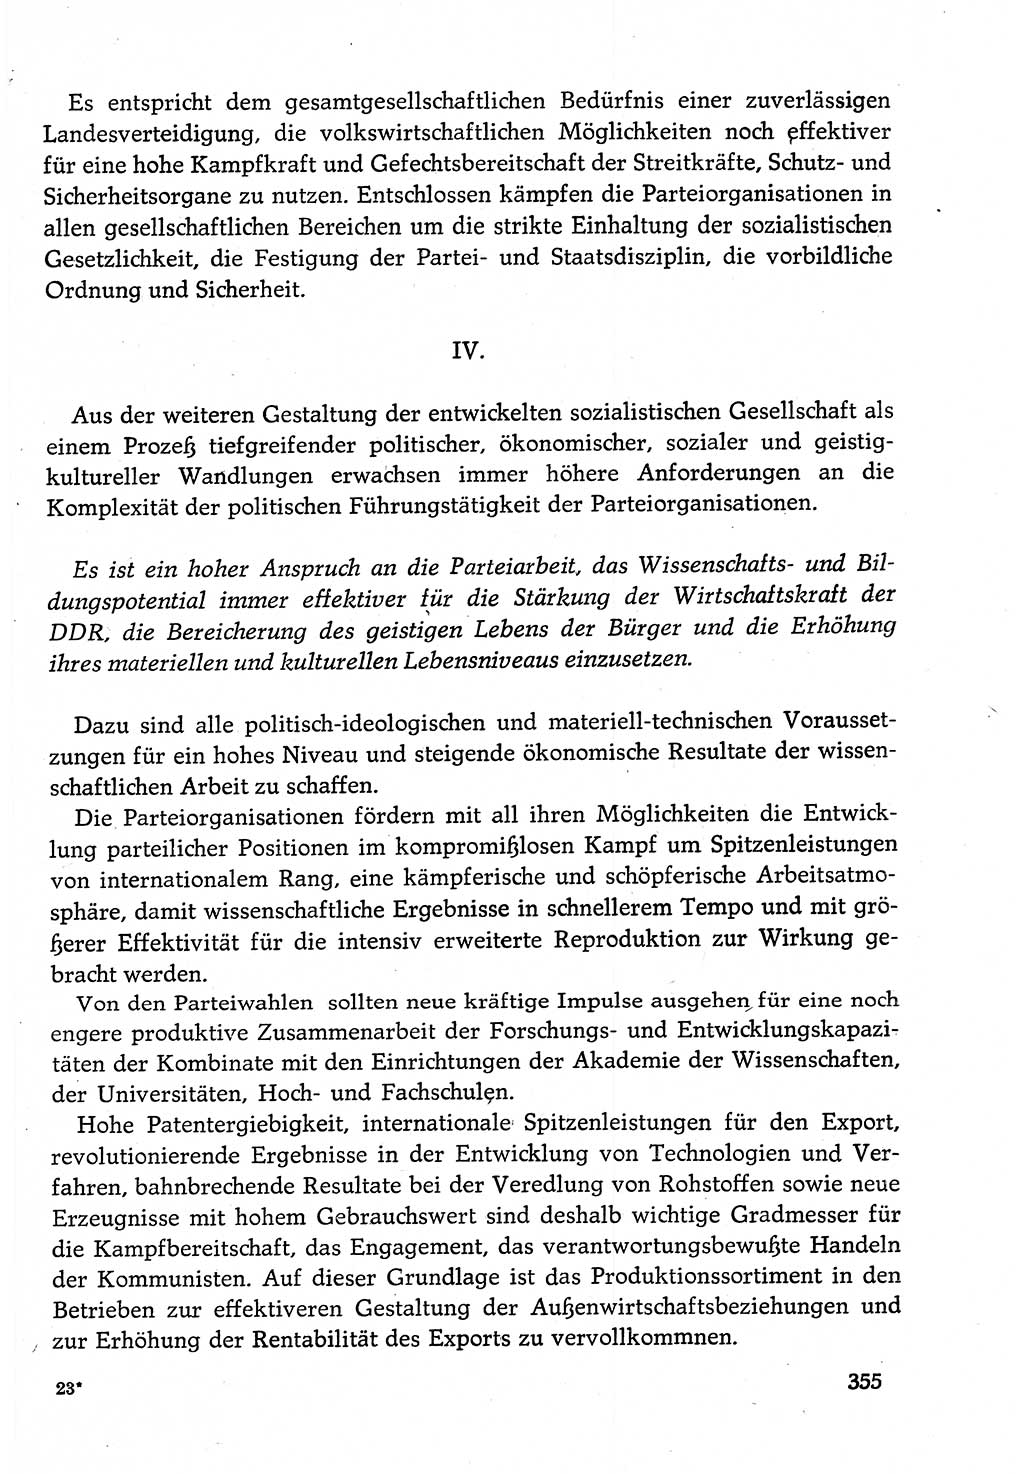 Dokumente der Sozialistischen Einheitspartei Deutschlands (SED) [Deutsche Demokratische Republik (DDR)] 1982-1983, Seite 355 (Dok. SED DDR 1982-1983, S. 355)